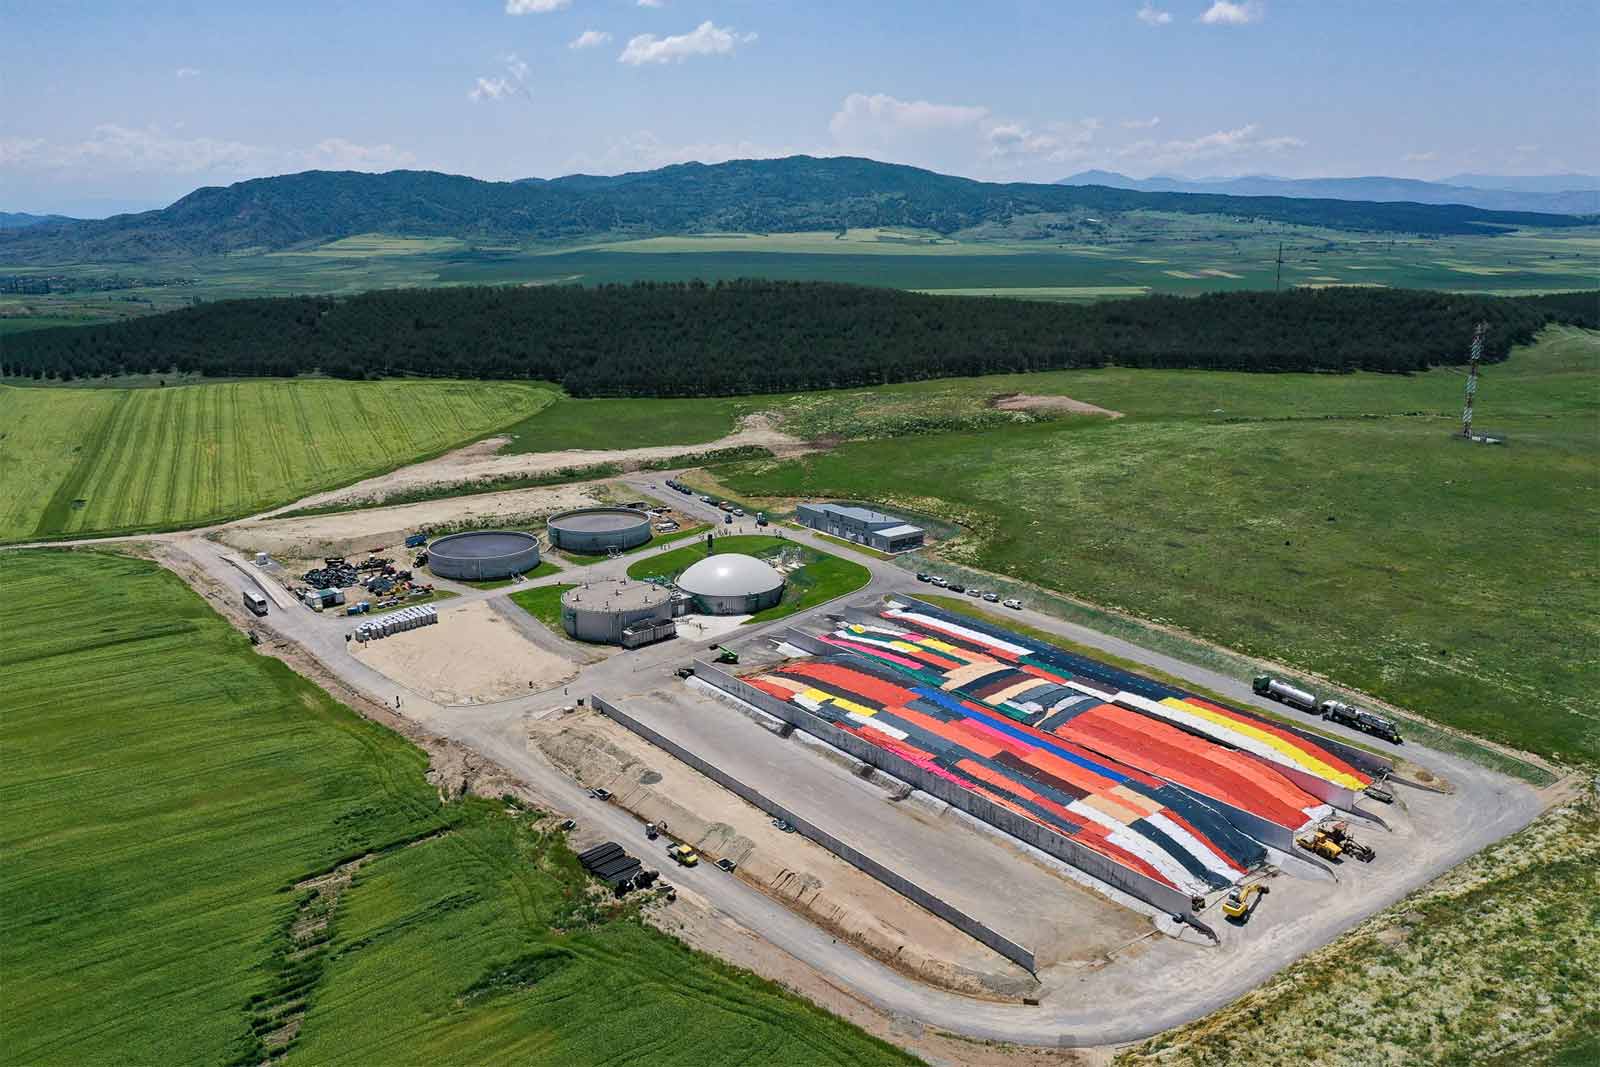 The Saramzalino biogas plant in Lozovo, North Macedonia